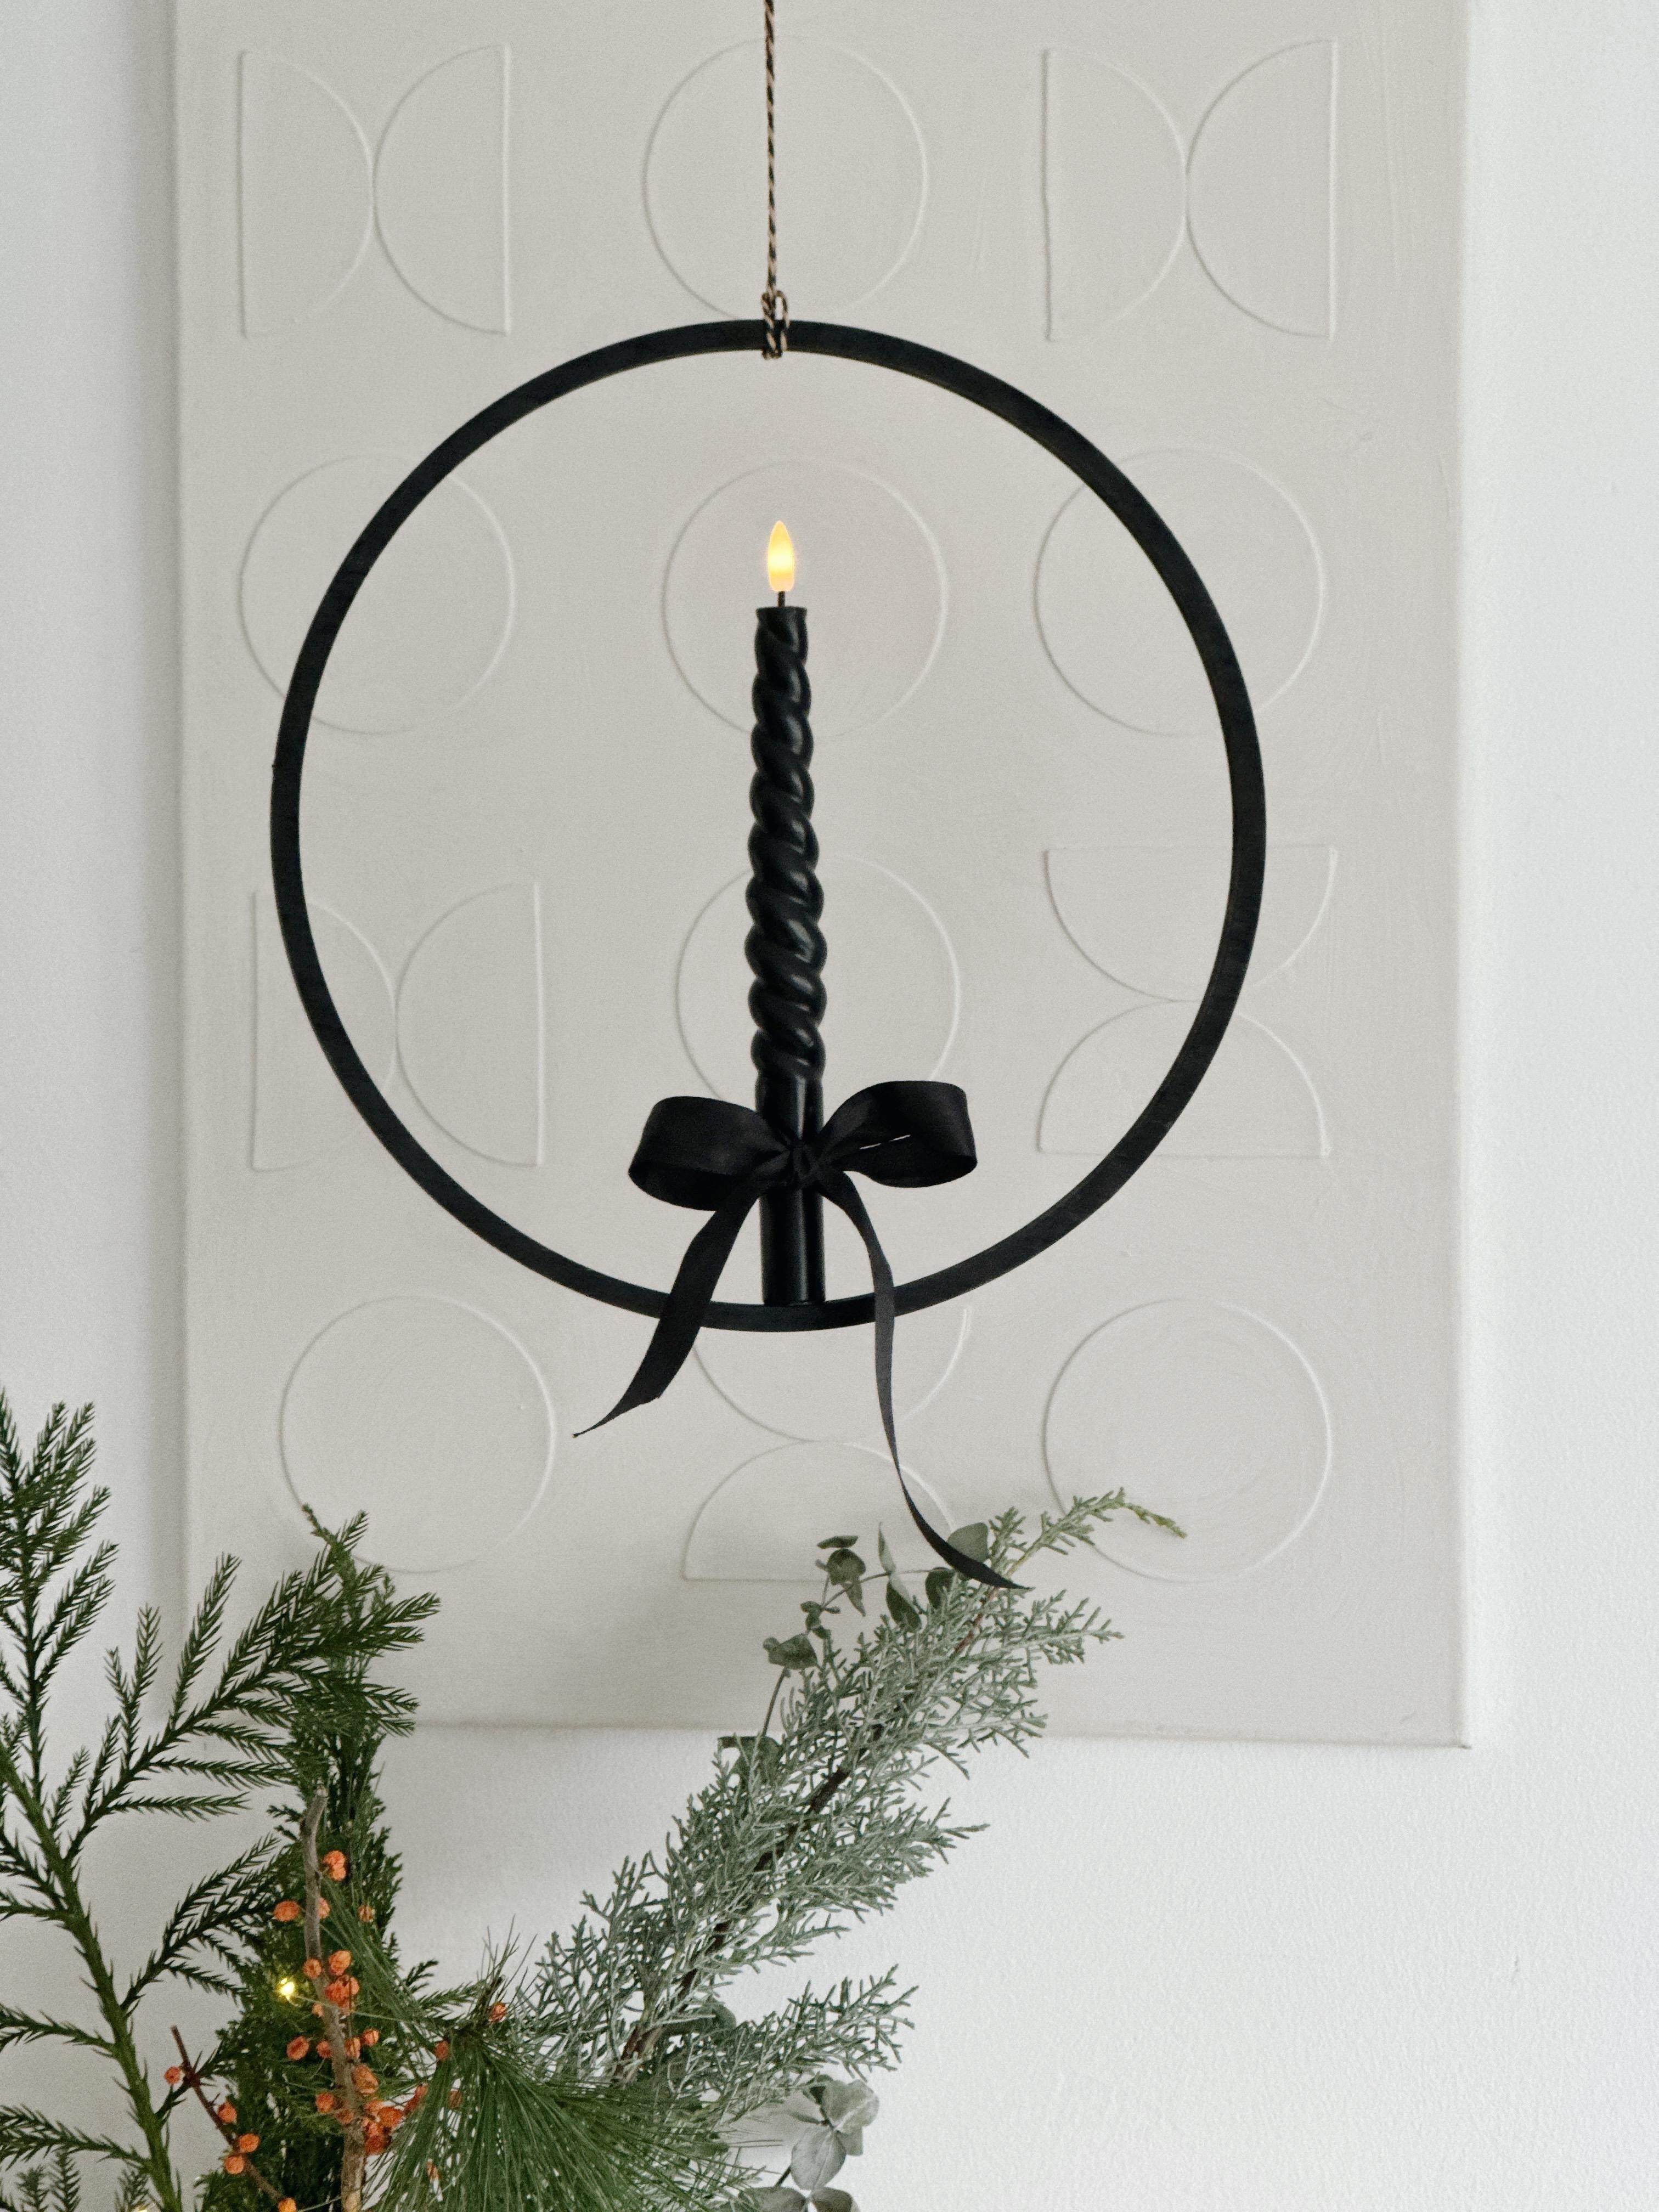 Minimalistischer DIY Kerzenhalter zum Aufhängen mit trendy Schleife und LED Kerze🕯️✨💫 #DIY #weihnachtsdeko #kerzendeko #schleifendeko #adventsdeko
#